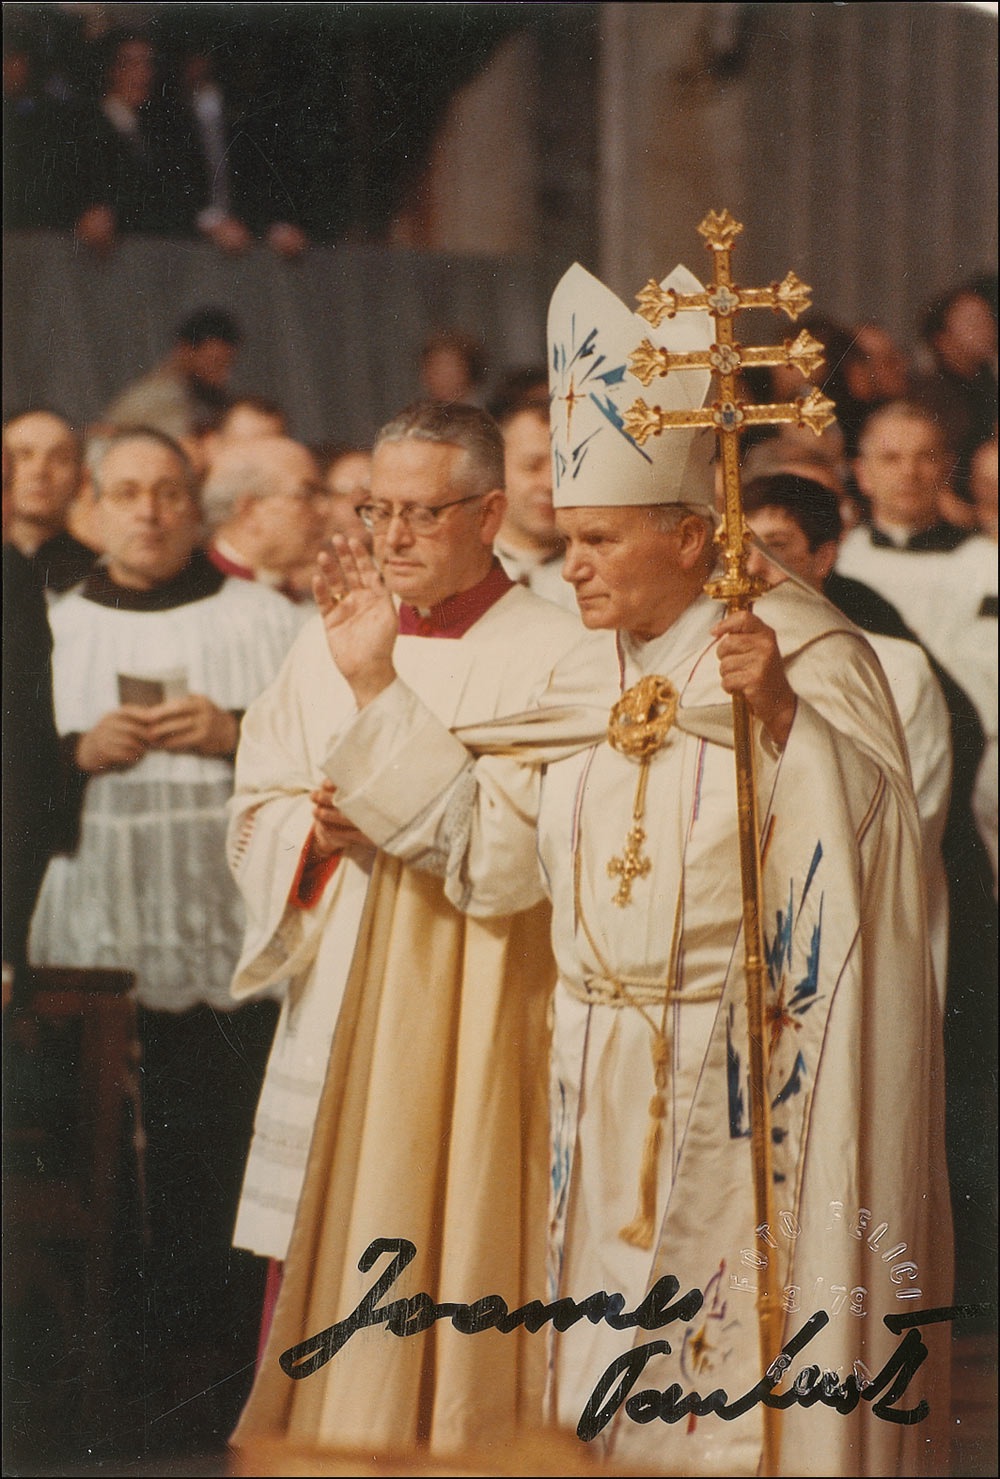 Lot #310 Pope John Paul II